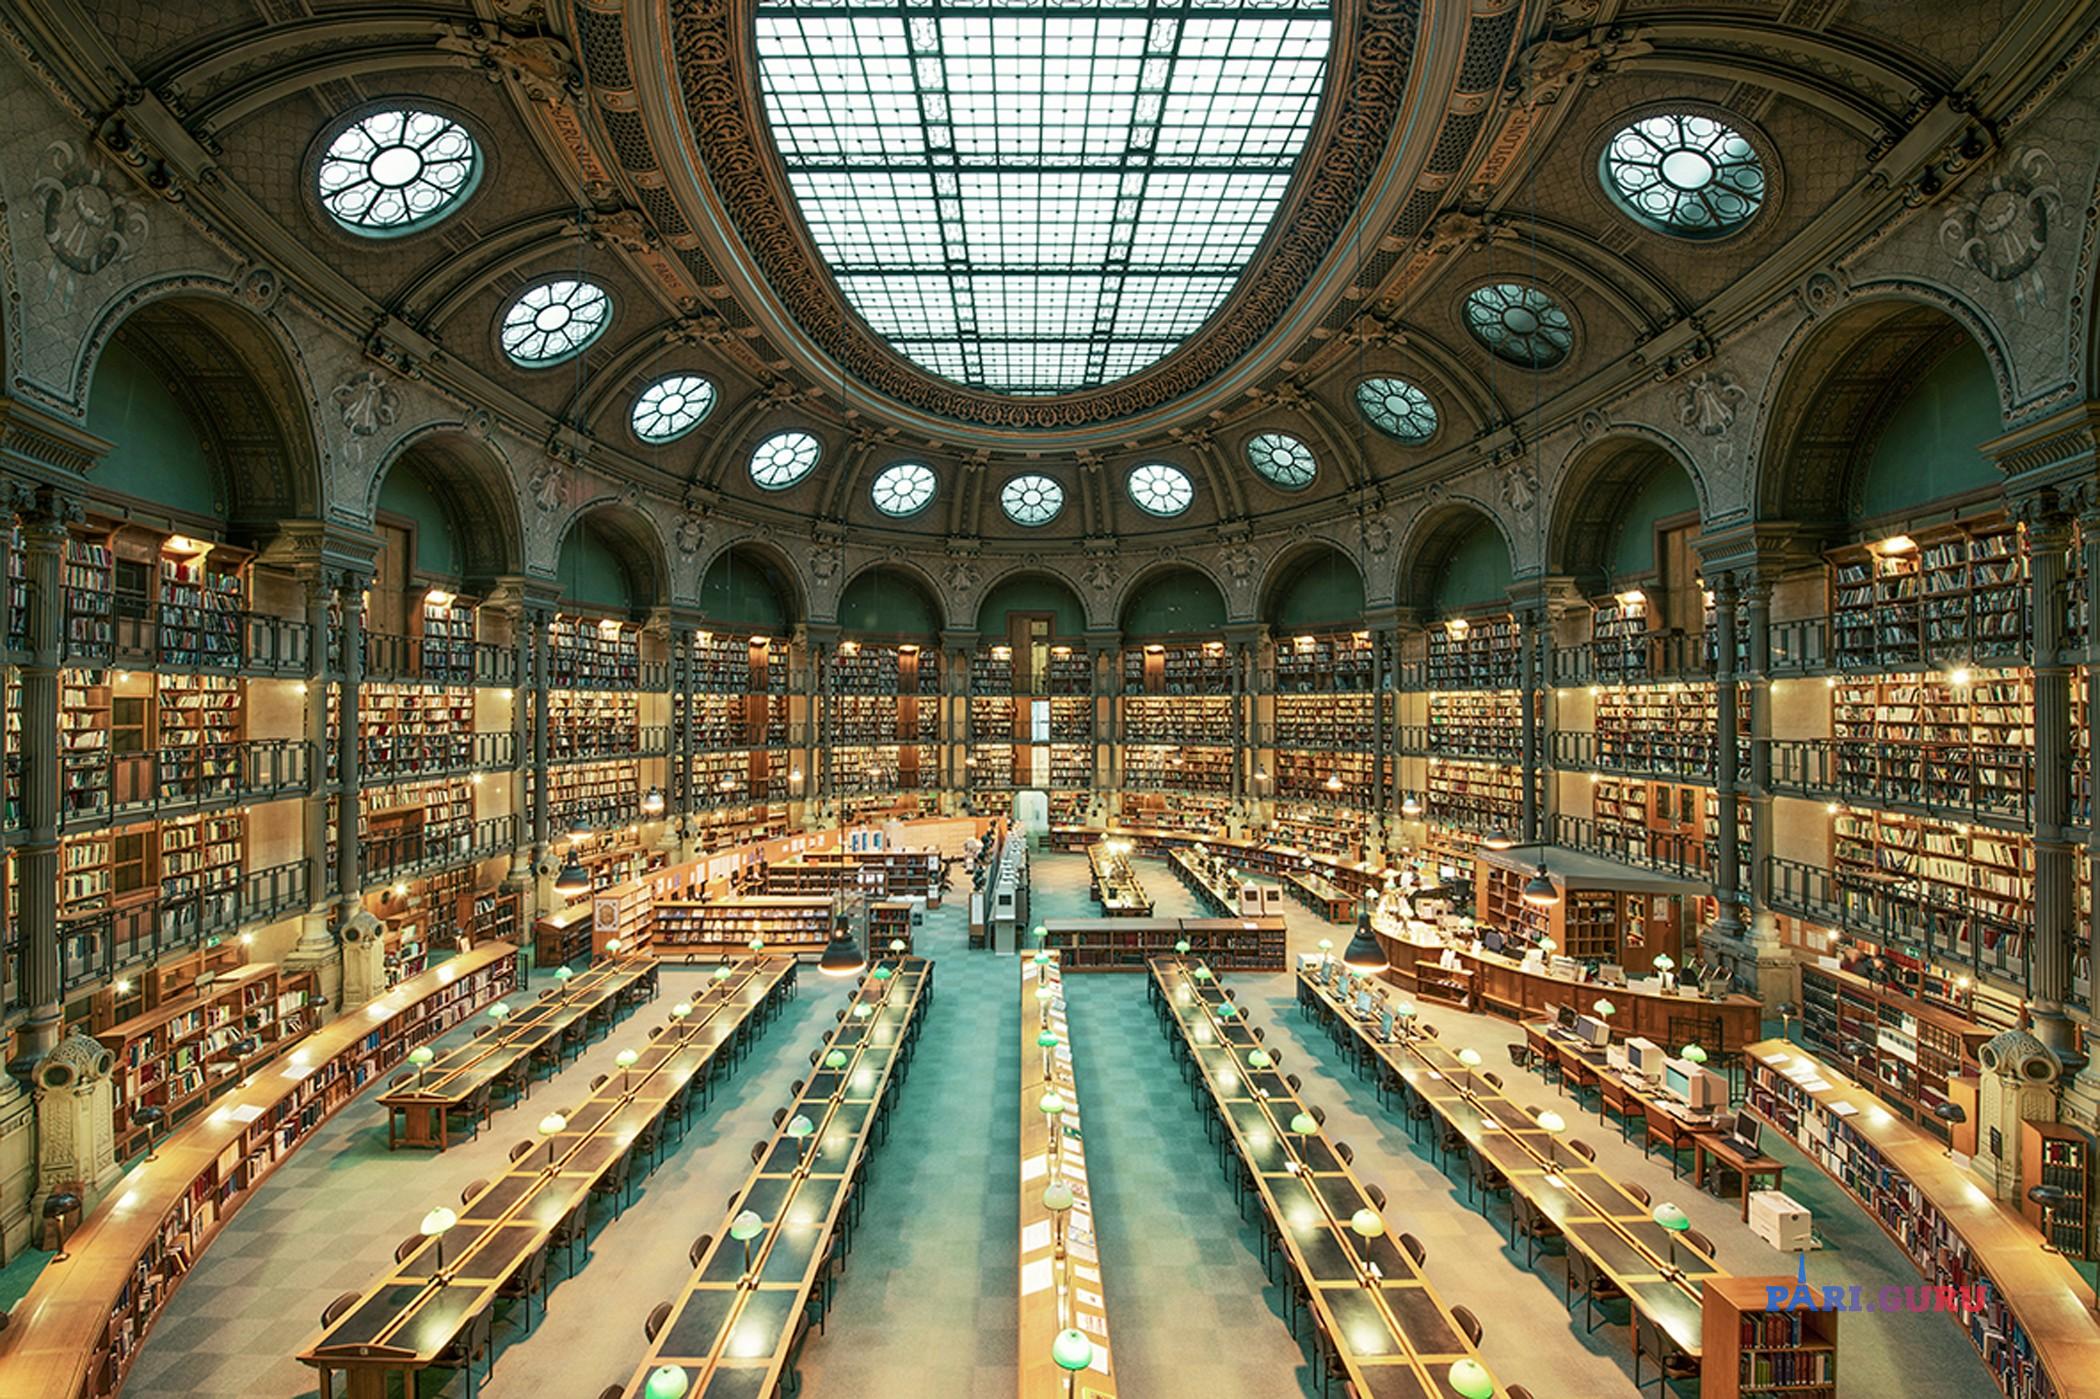 Библ библиотека. Национальная библиотека Франции (Париж, 1354). Национальная библиотека Франции (BNF). BNF Франция Париж Национальная библиотека фр. Королевская библиотека Франции.